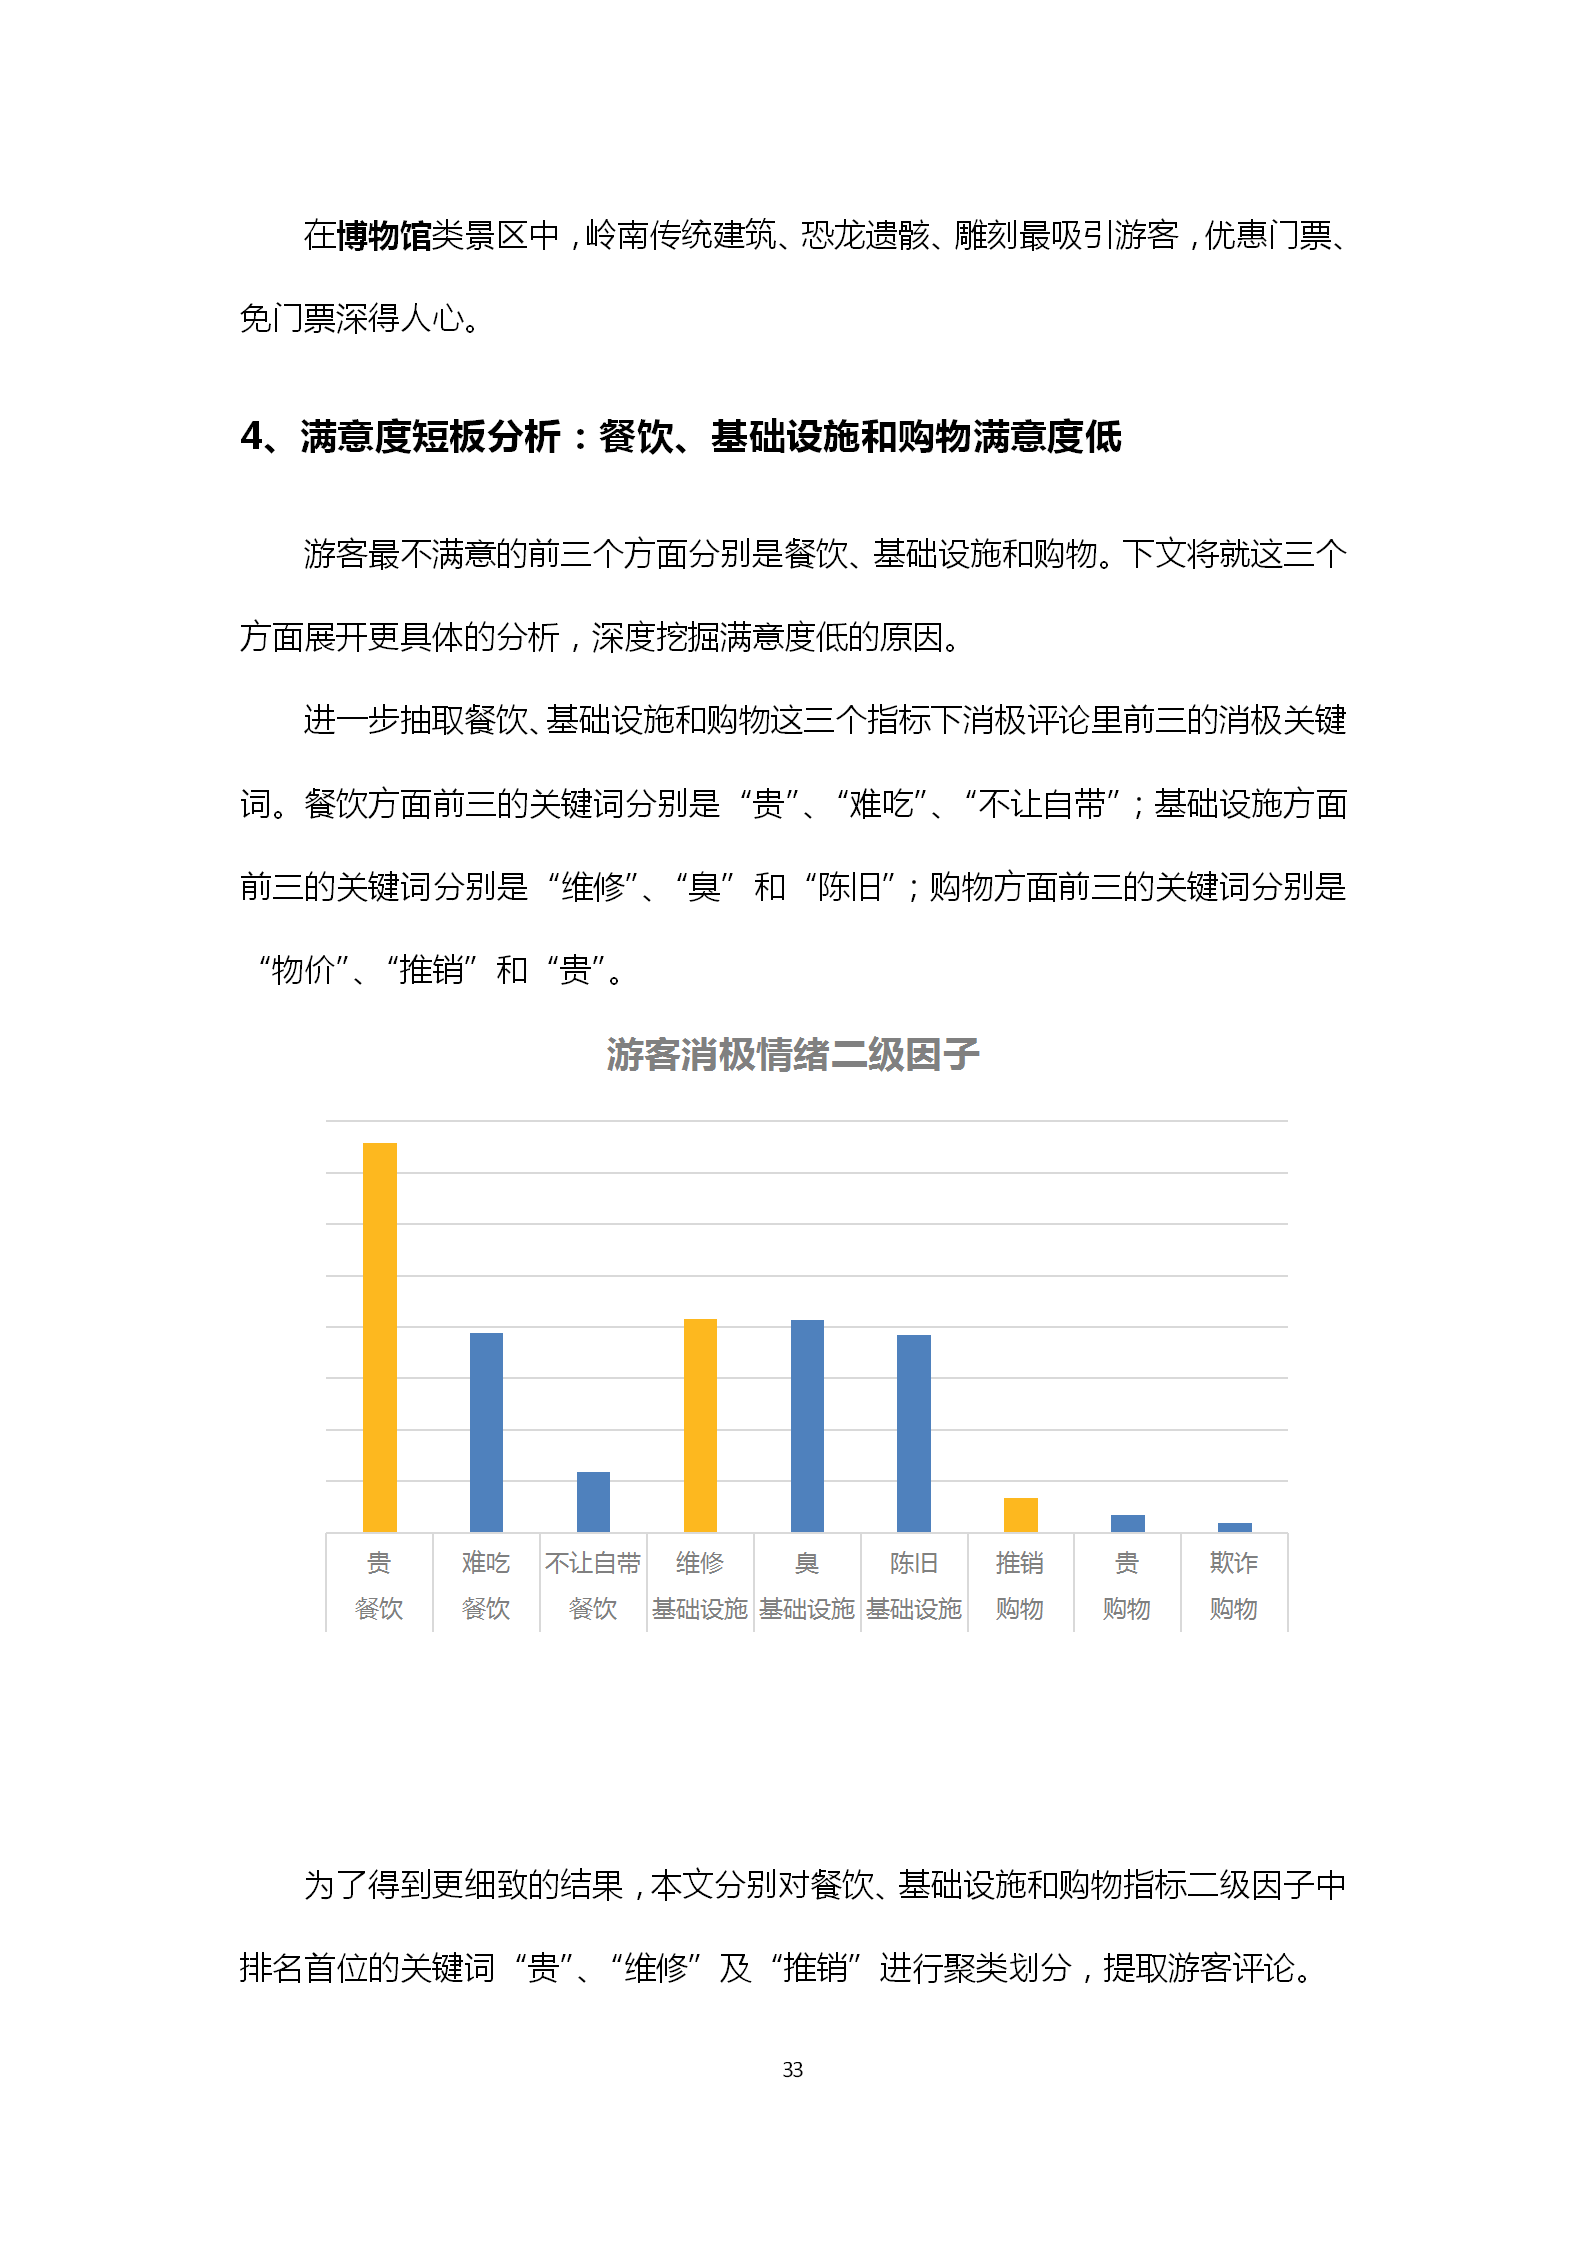 广东省旅游景区游客满意度大数据调查报告-2018年第三季度20181106_34